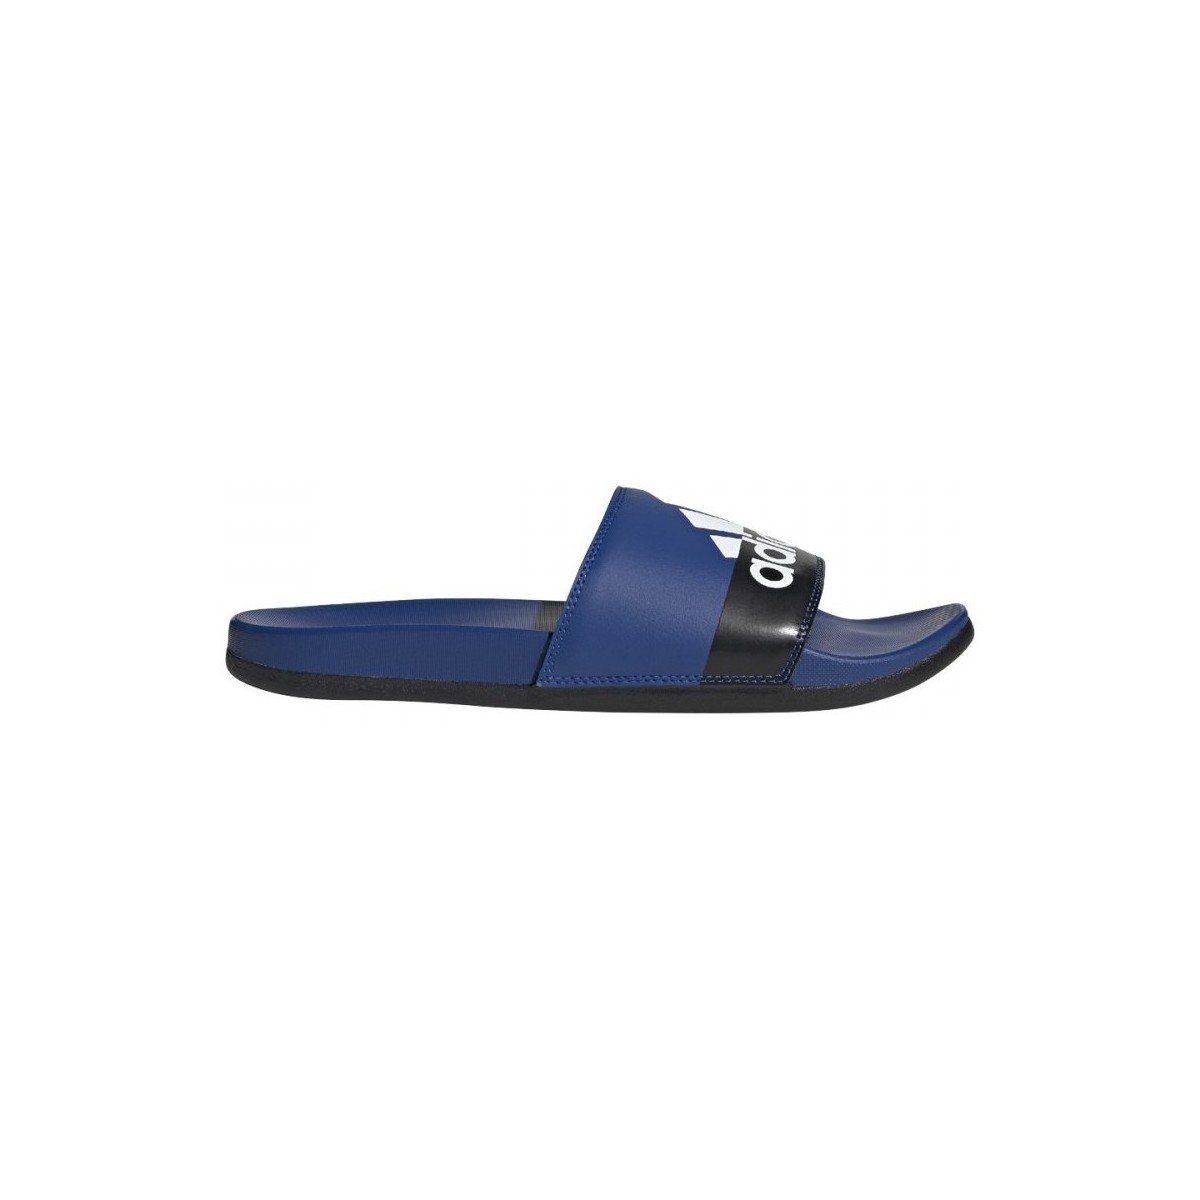 Chaussures Garçon adidas sneakers bq6548 black friday deals Adilette Comfort Bleu